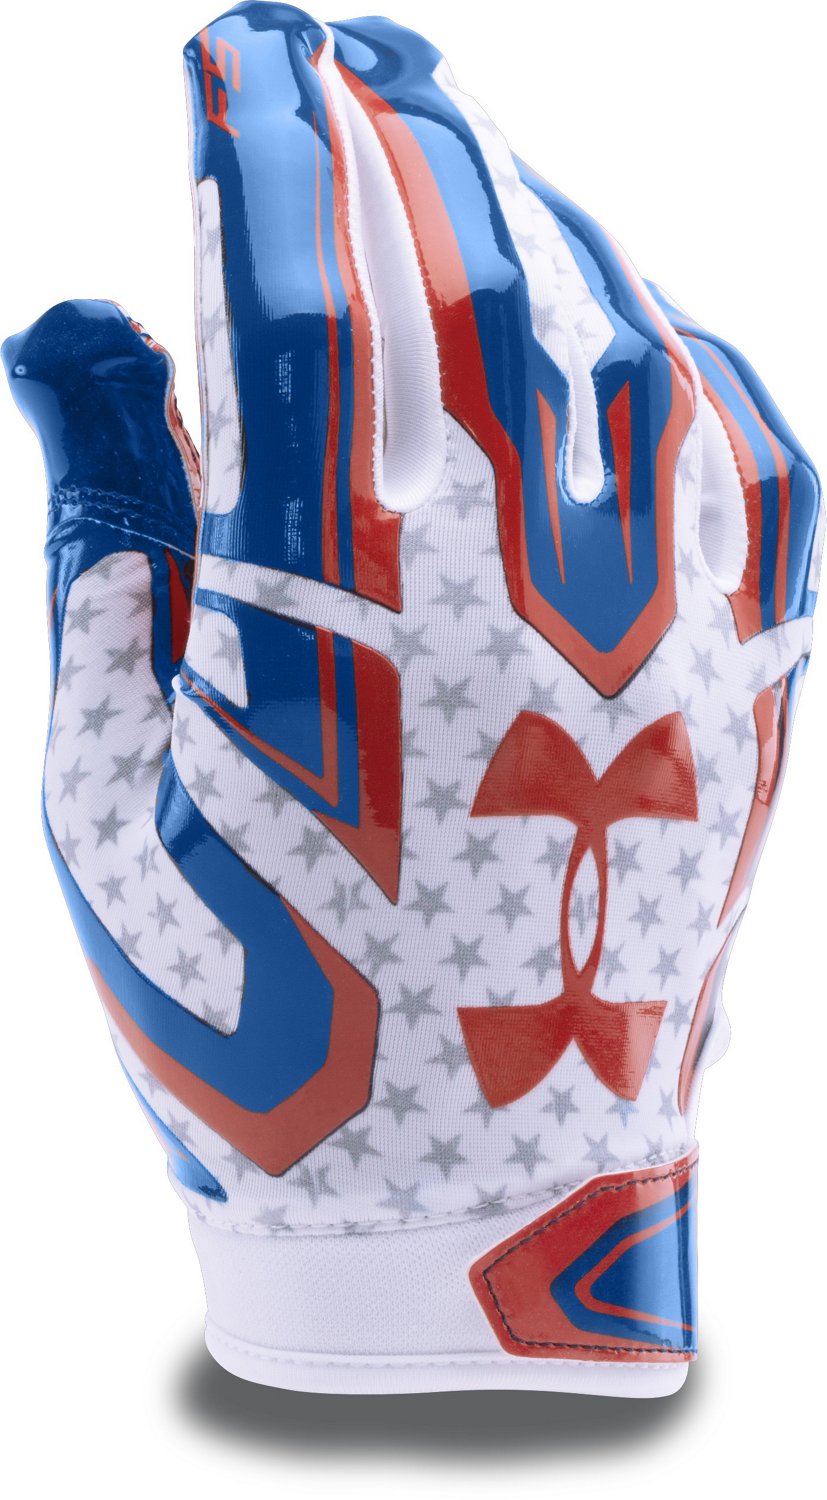 blue under armour football gloves